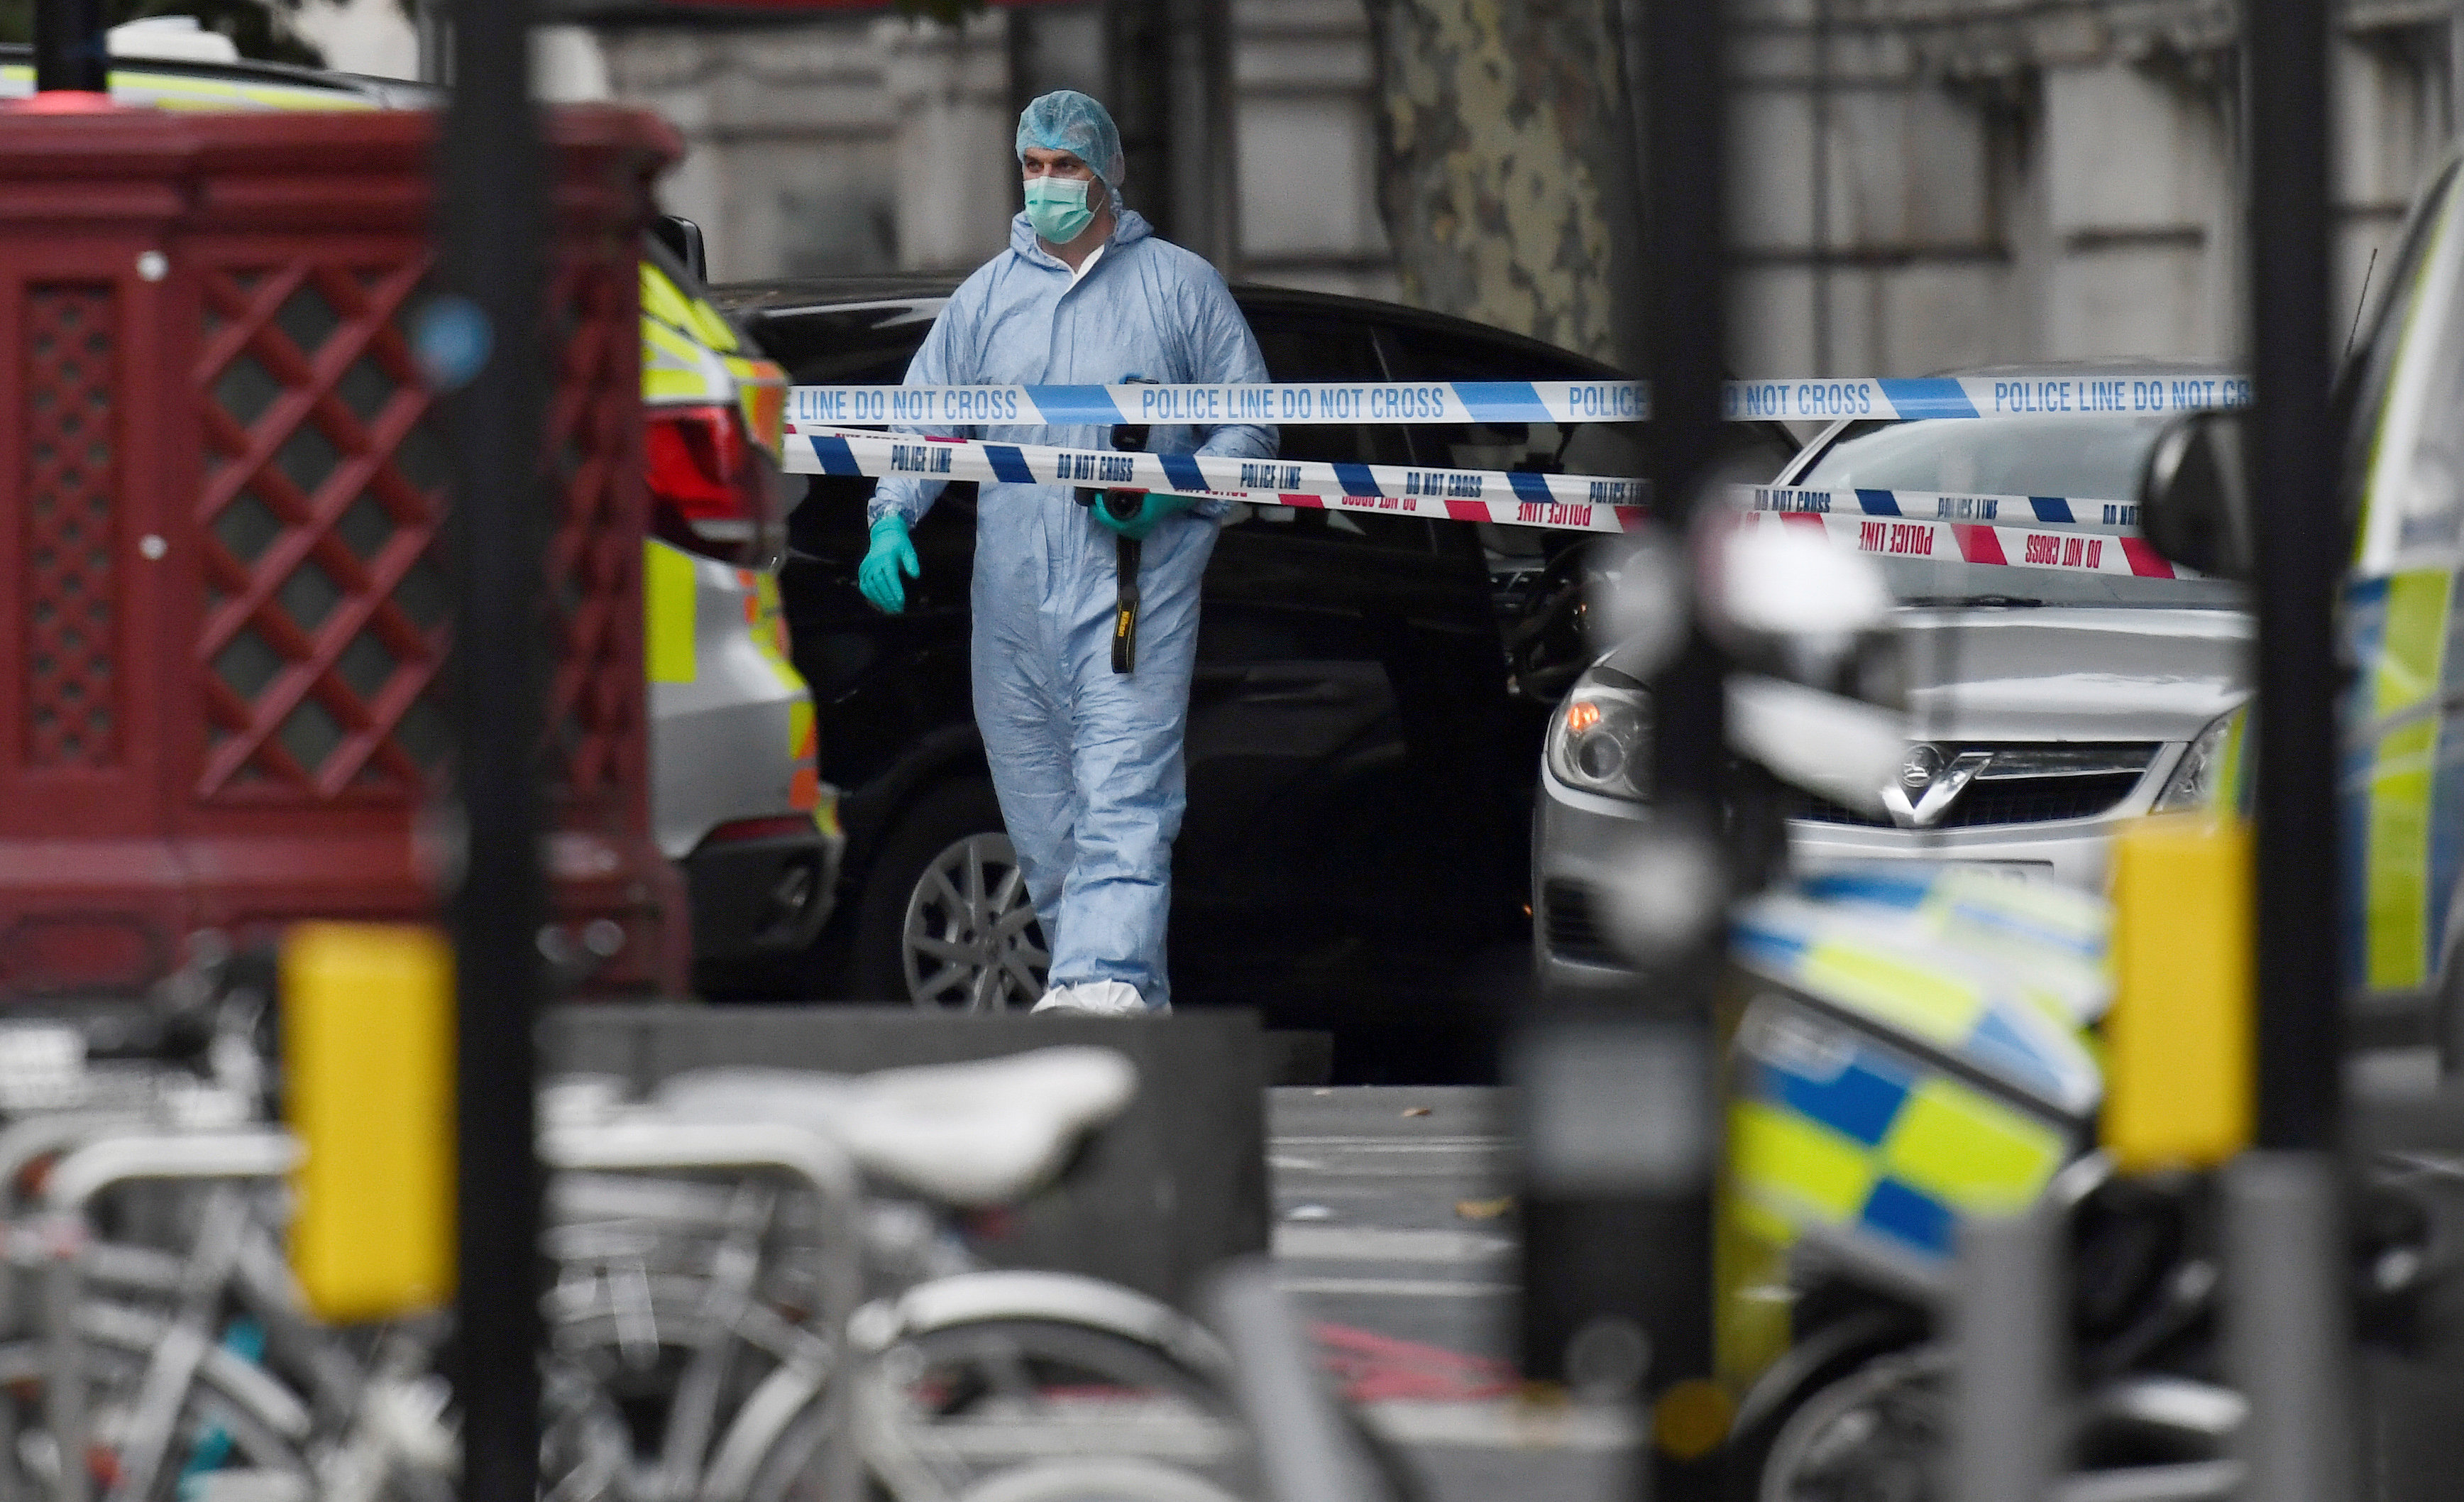 Λονδίνο: Αυτοκίνητο έπεσε σε πεζοδρόμιο έξω από Μουσείο, αρκετοί τραυματίες